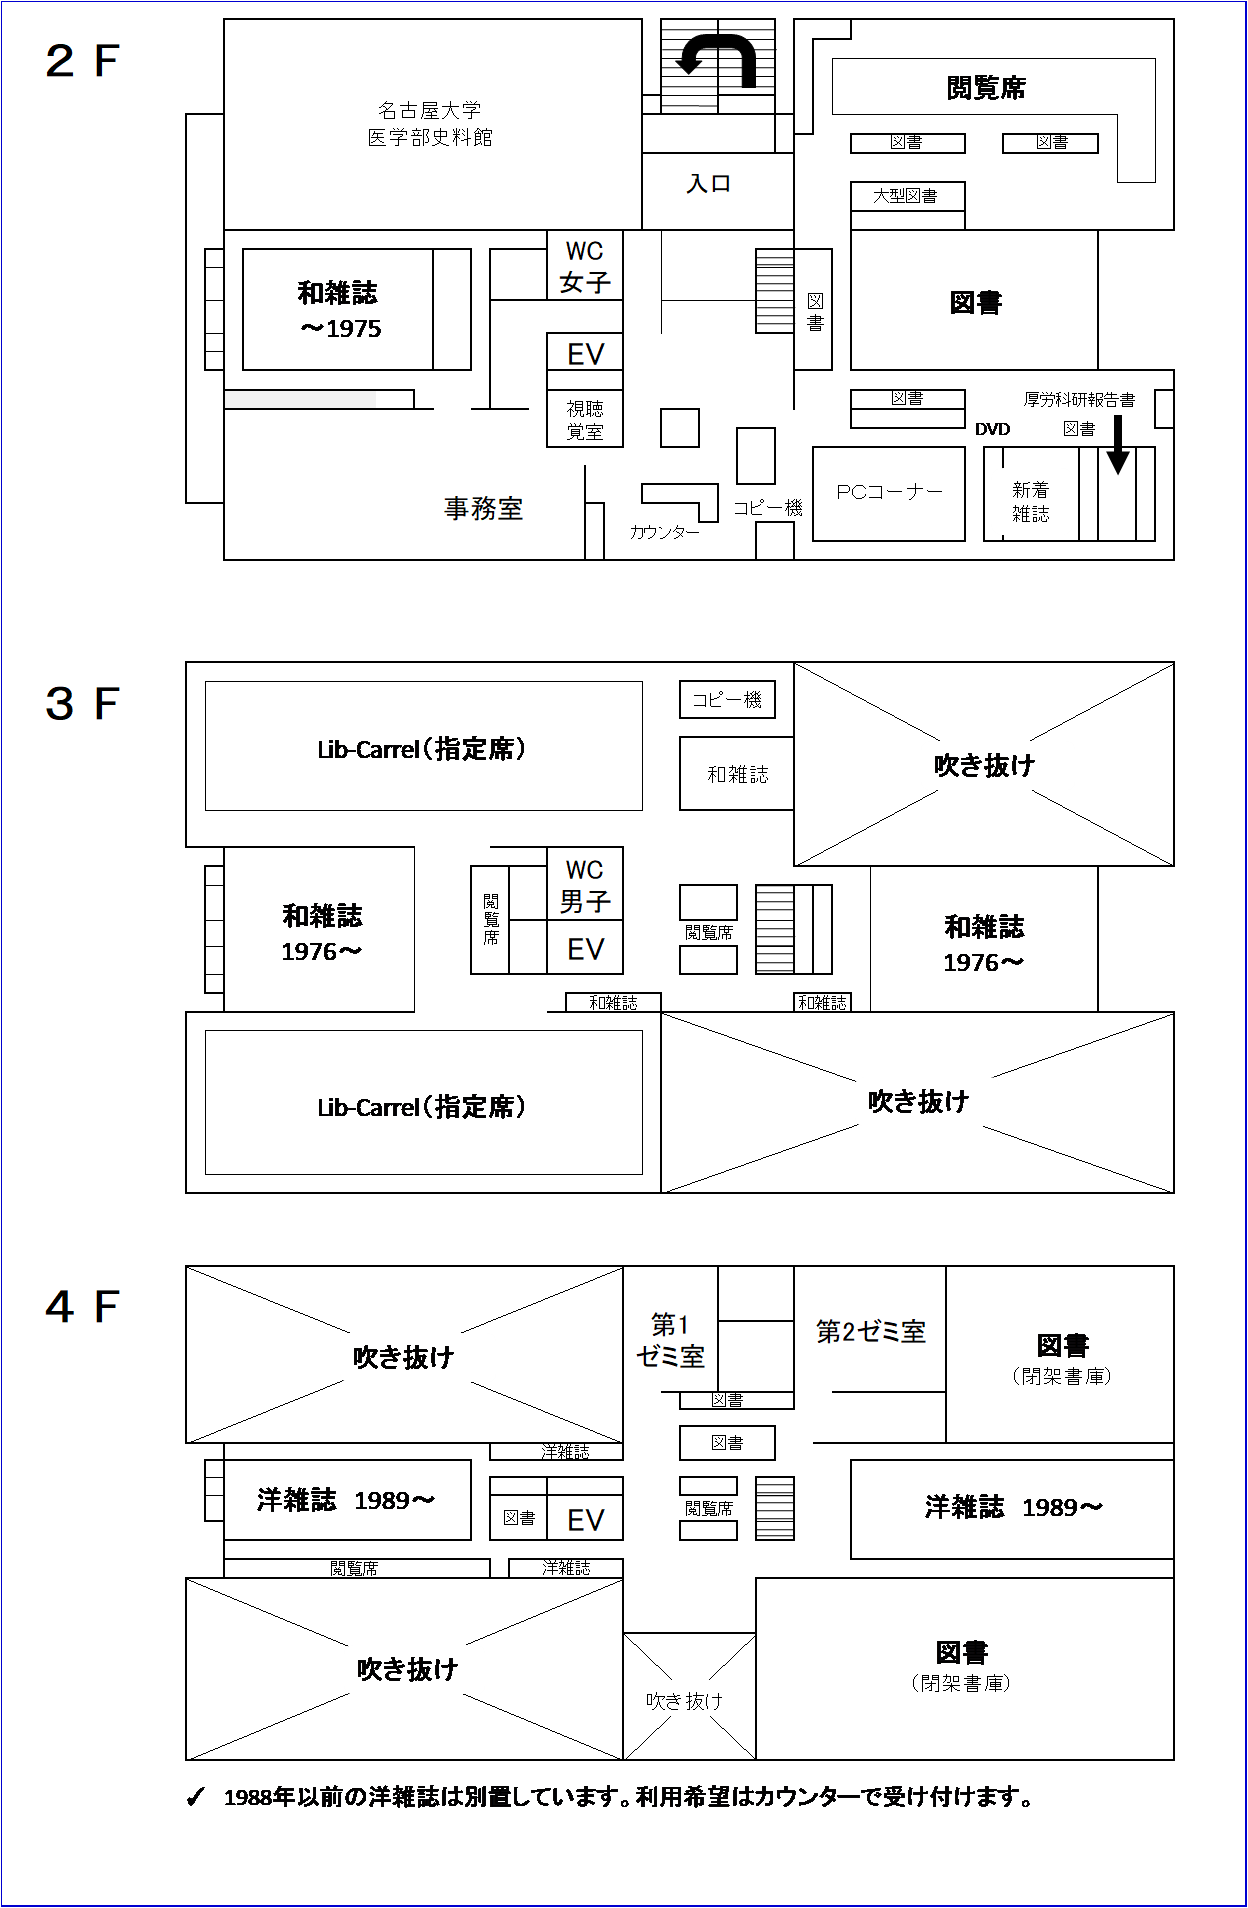 名古屋大学附属図書館医学部分館 図書室フロアマップ